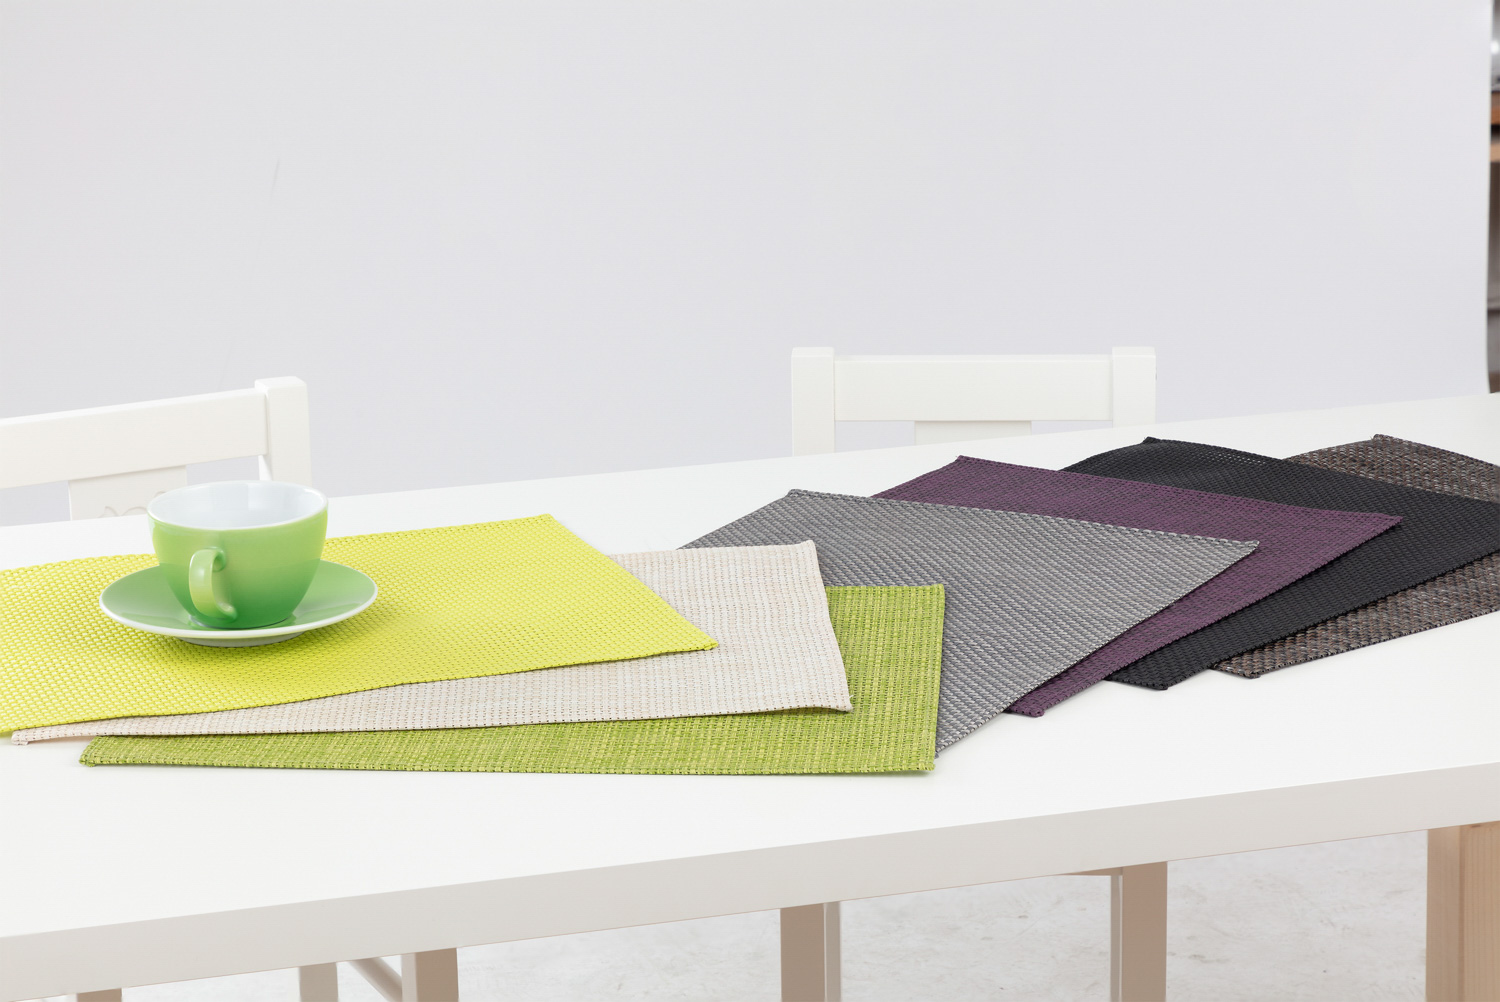 APS Tischset HIVA, Farbe: purple, Größe: 45 x 33 cm, PVC, Schmalband